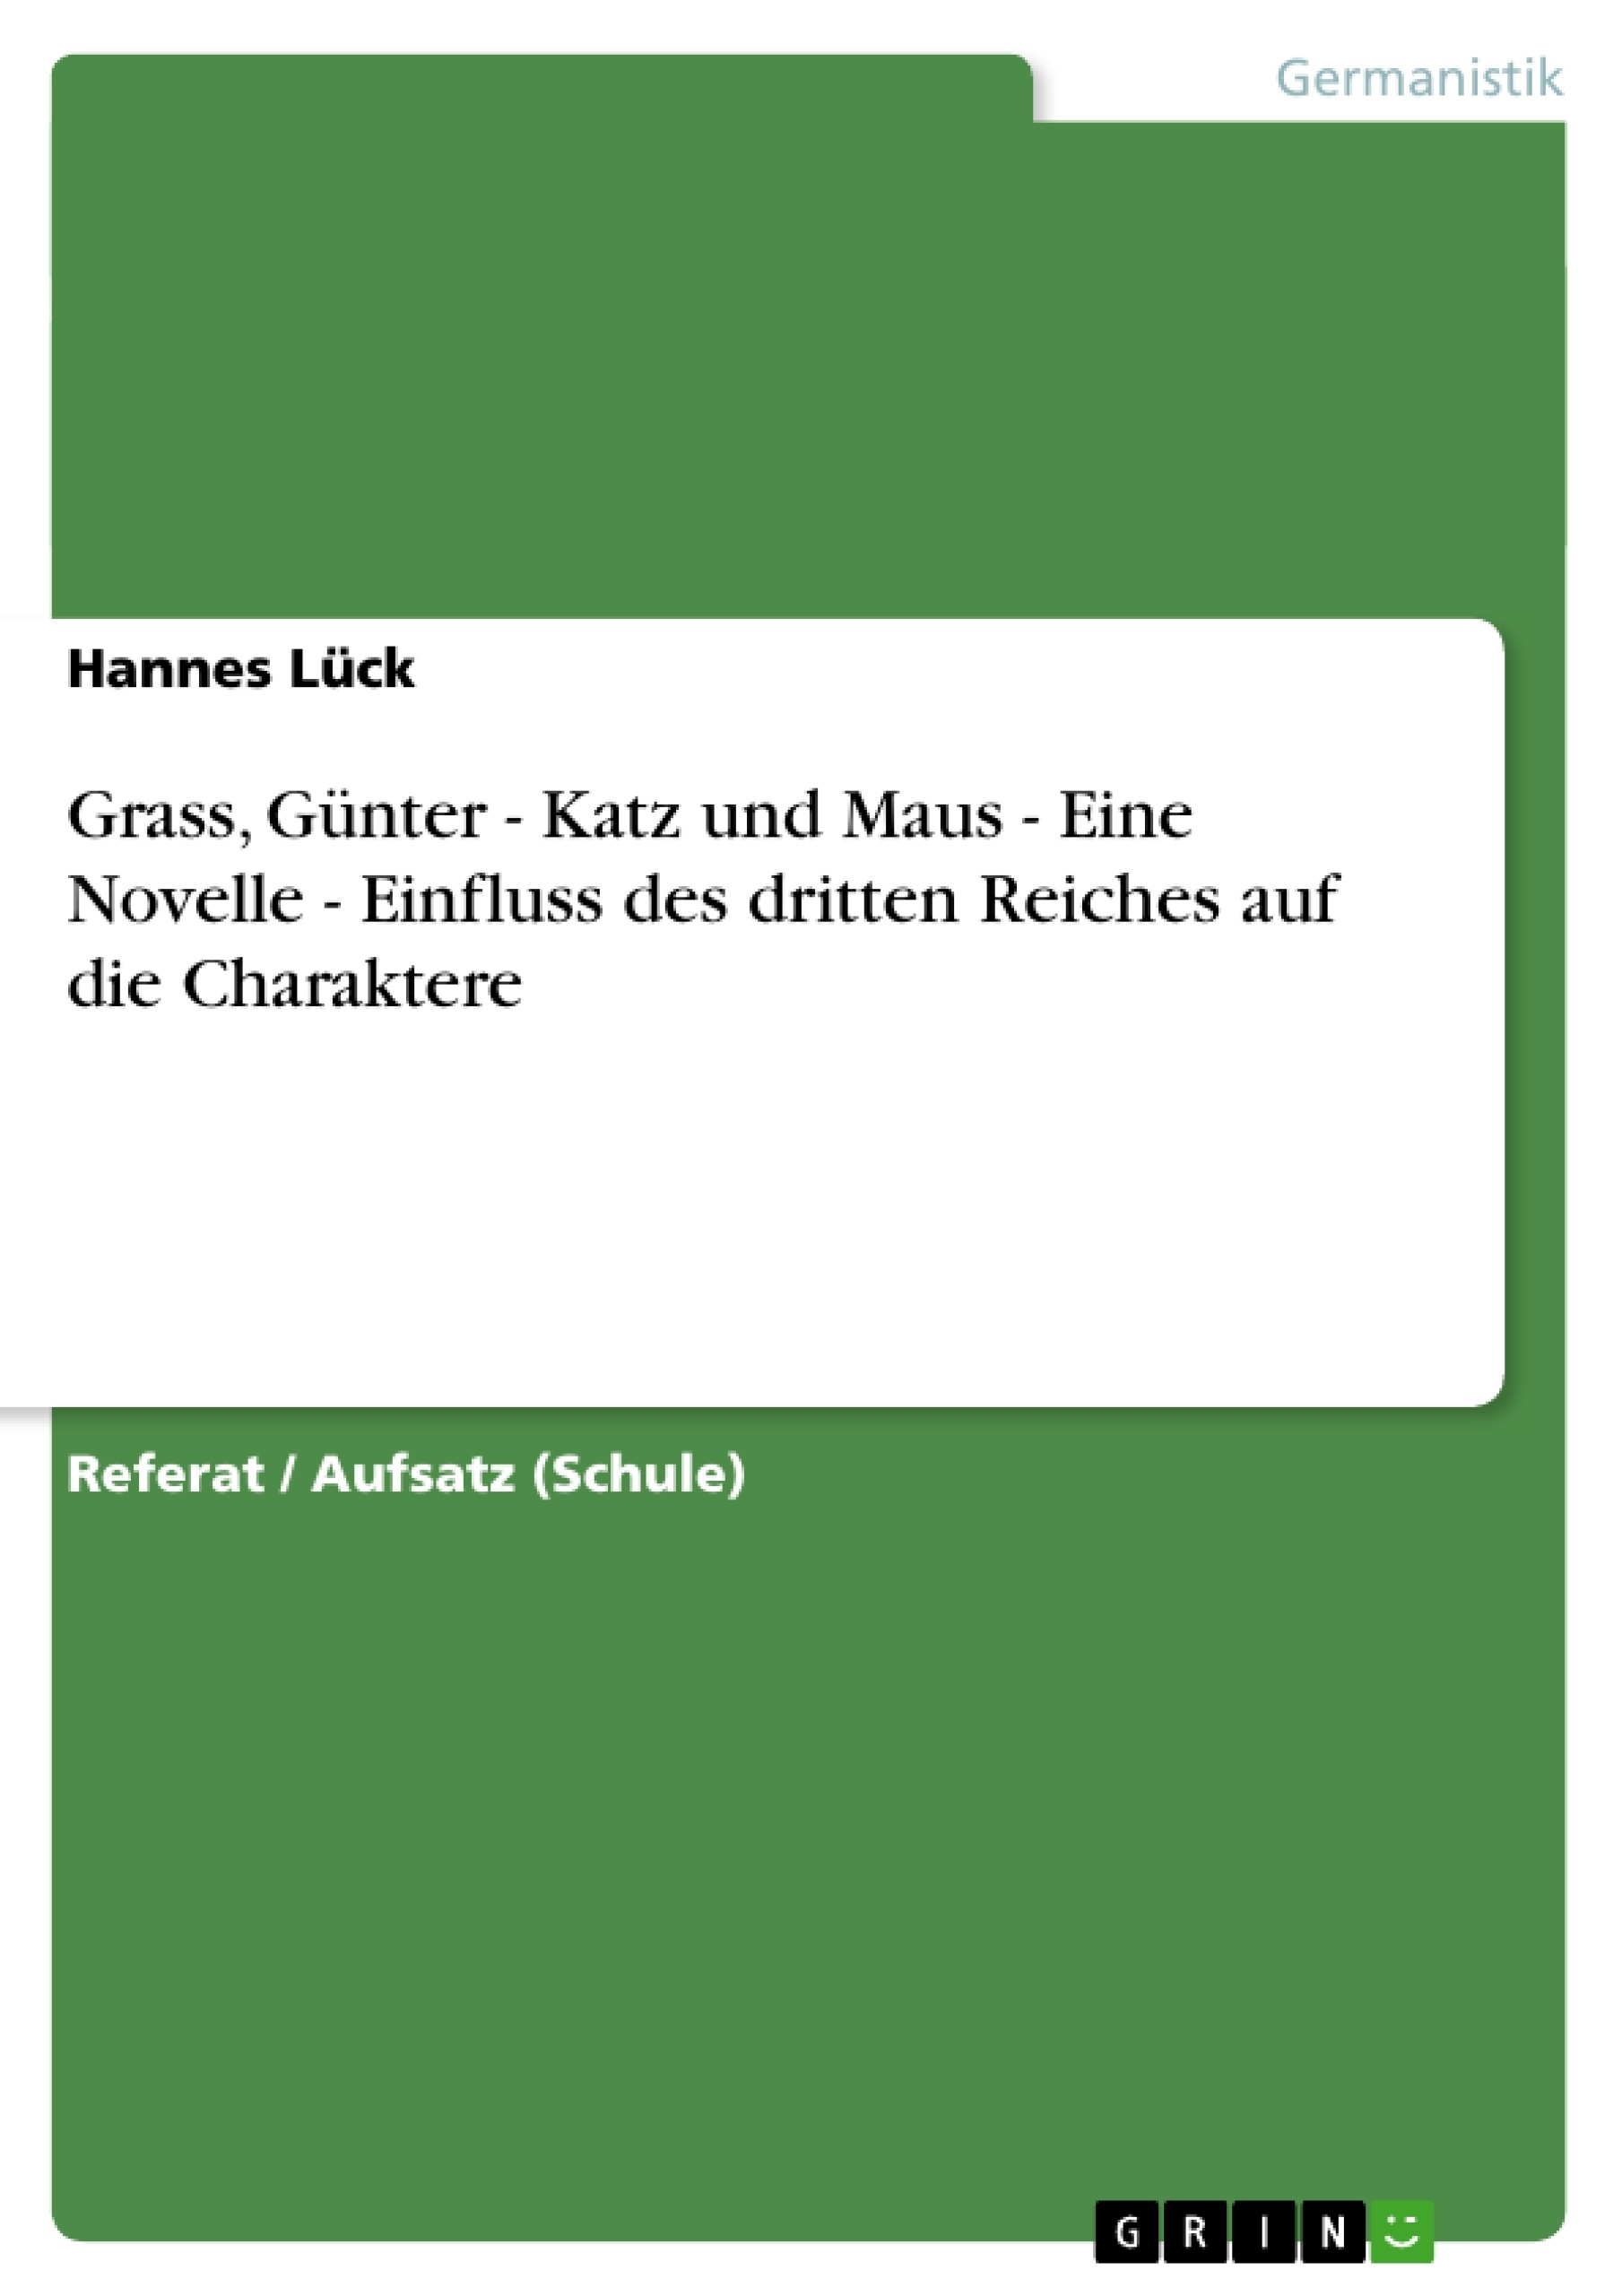 Title: Grass, Günter - Katz und Maus - Eine Novelle - Einfluss des dritten Reiches auf die Charaktere